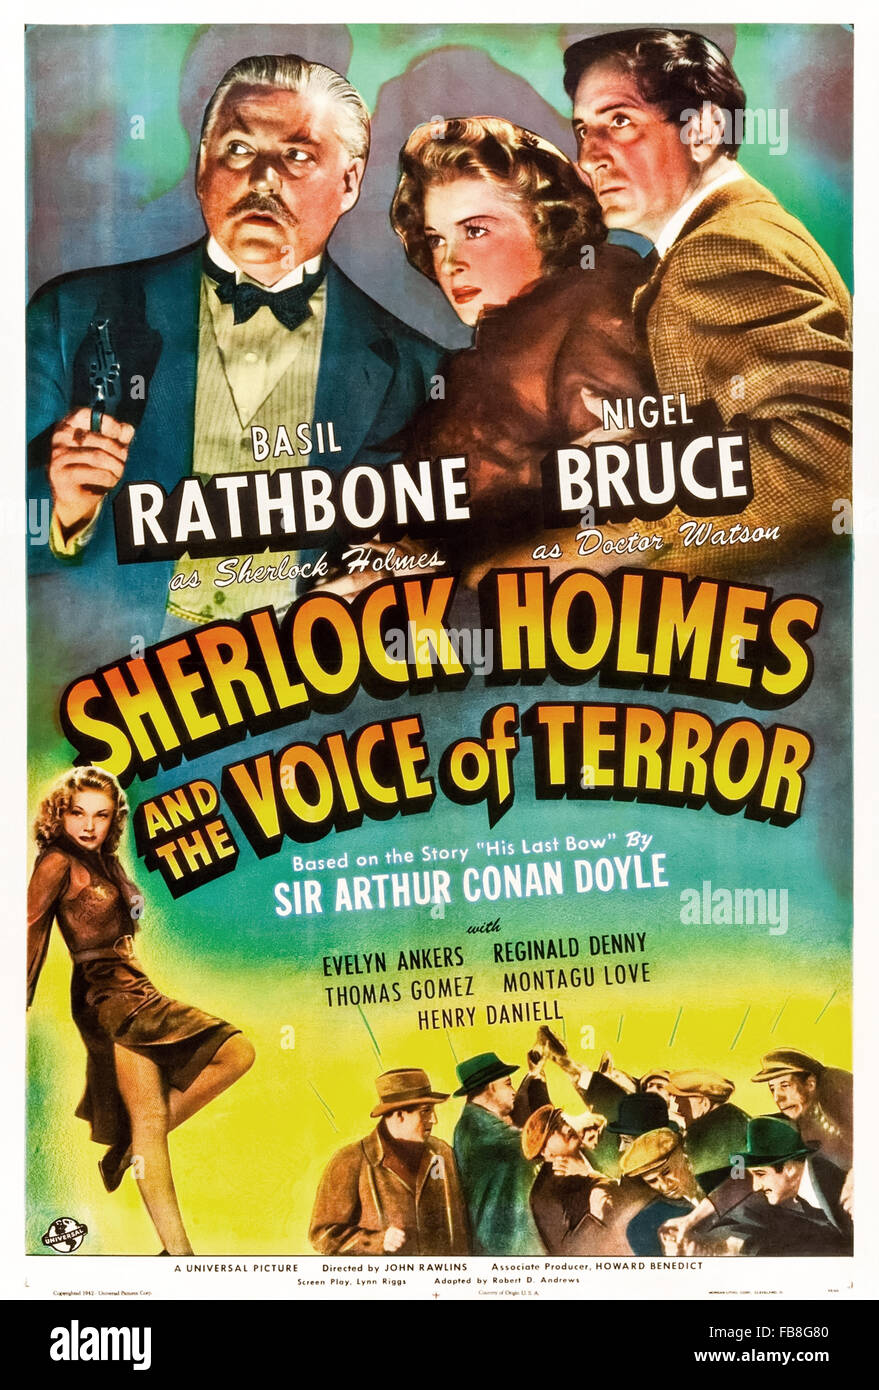 Pour l'affiche de Sherlock Holmes et la voix de la terreur' 1942 film réalisé par John Rawlins et avec Basil Rathbone (Holmes) ; Nigel Bruce (Watson) et Evelyn Ankers (Kitty). Voir la description pour plus d'informations. Banque D'Images